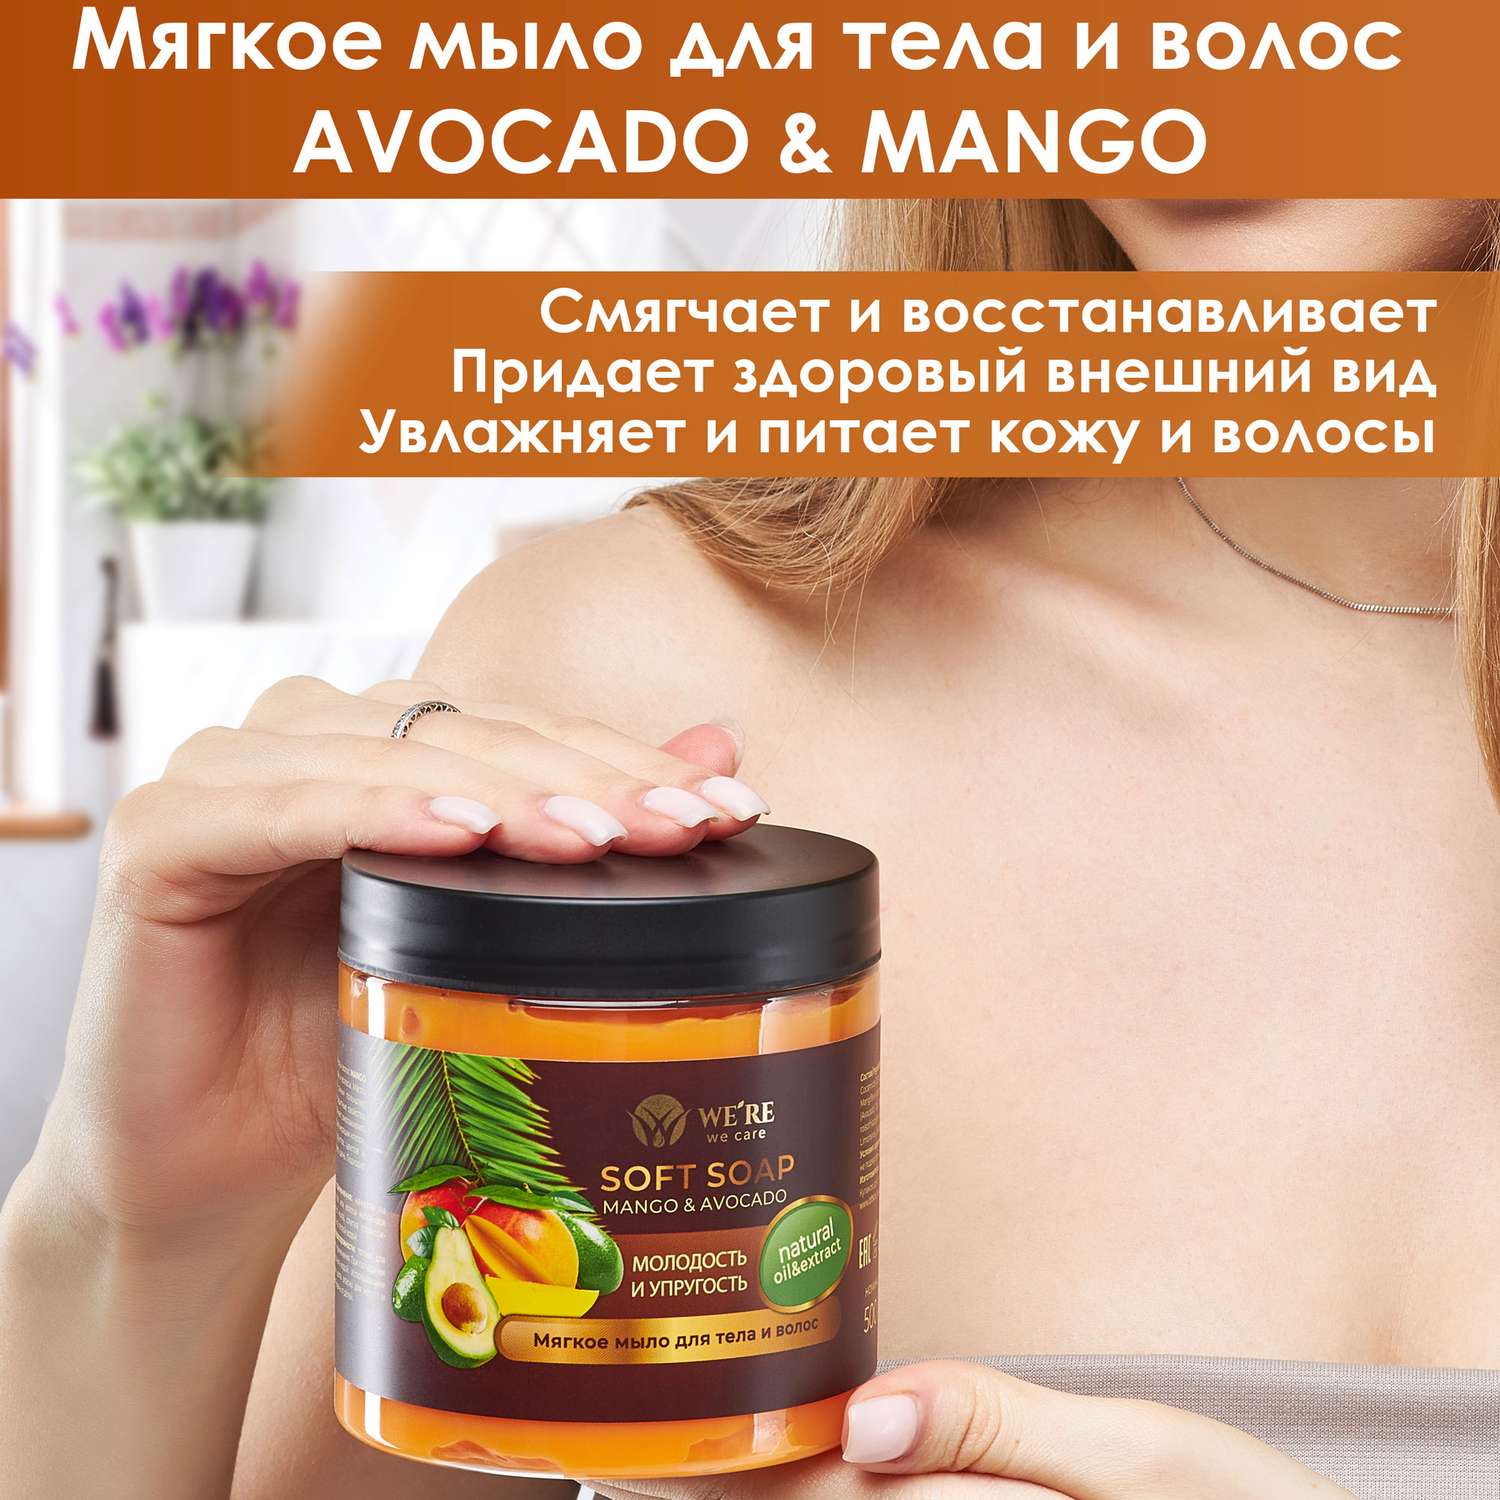 Мыло WERE we care мягкое для тела и волос Авокадо и манго 500 мл - фото 2